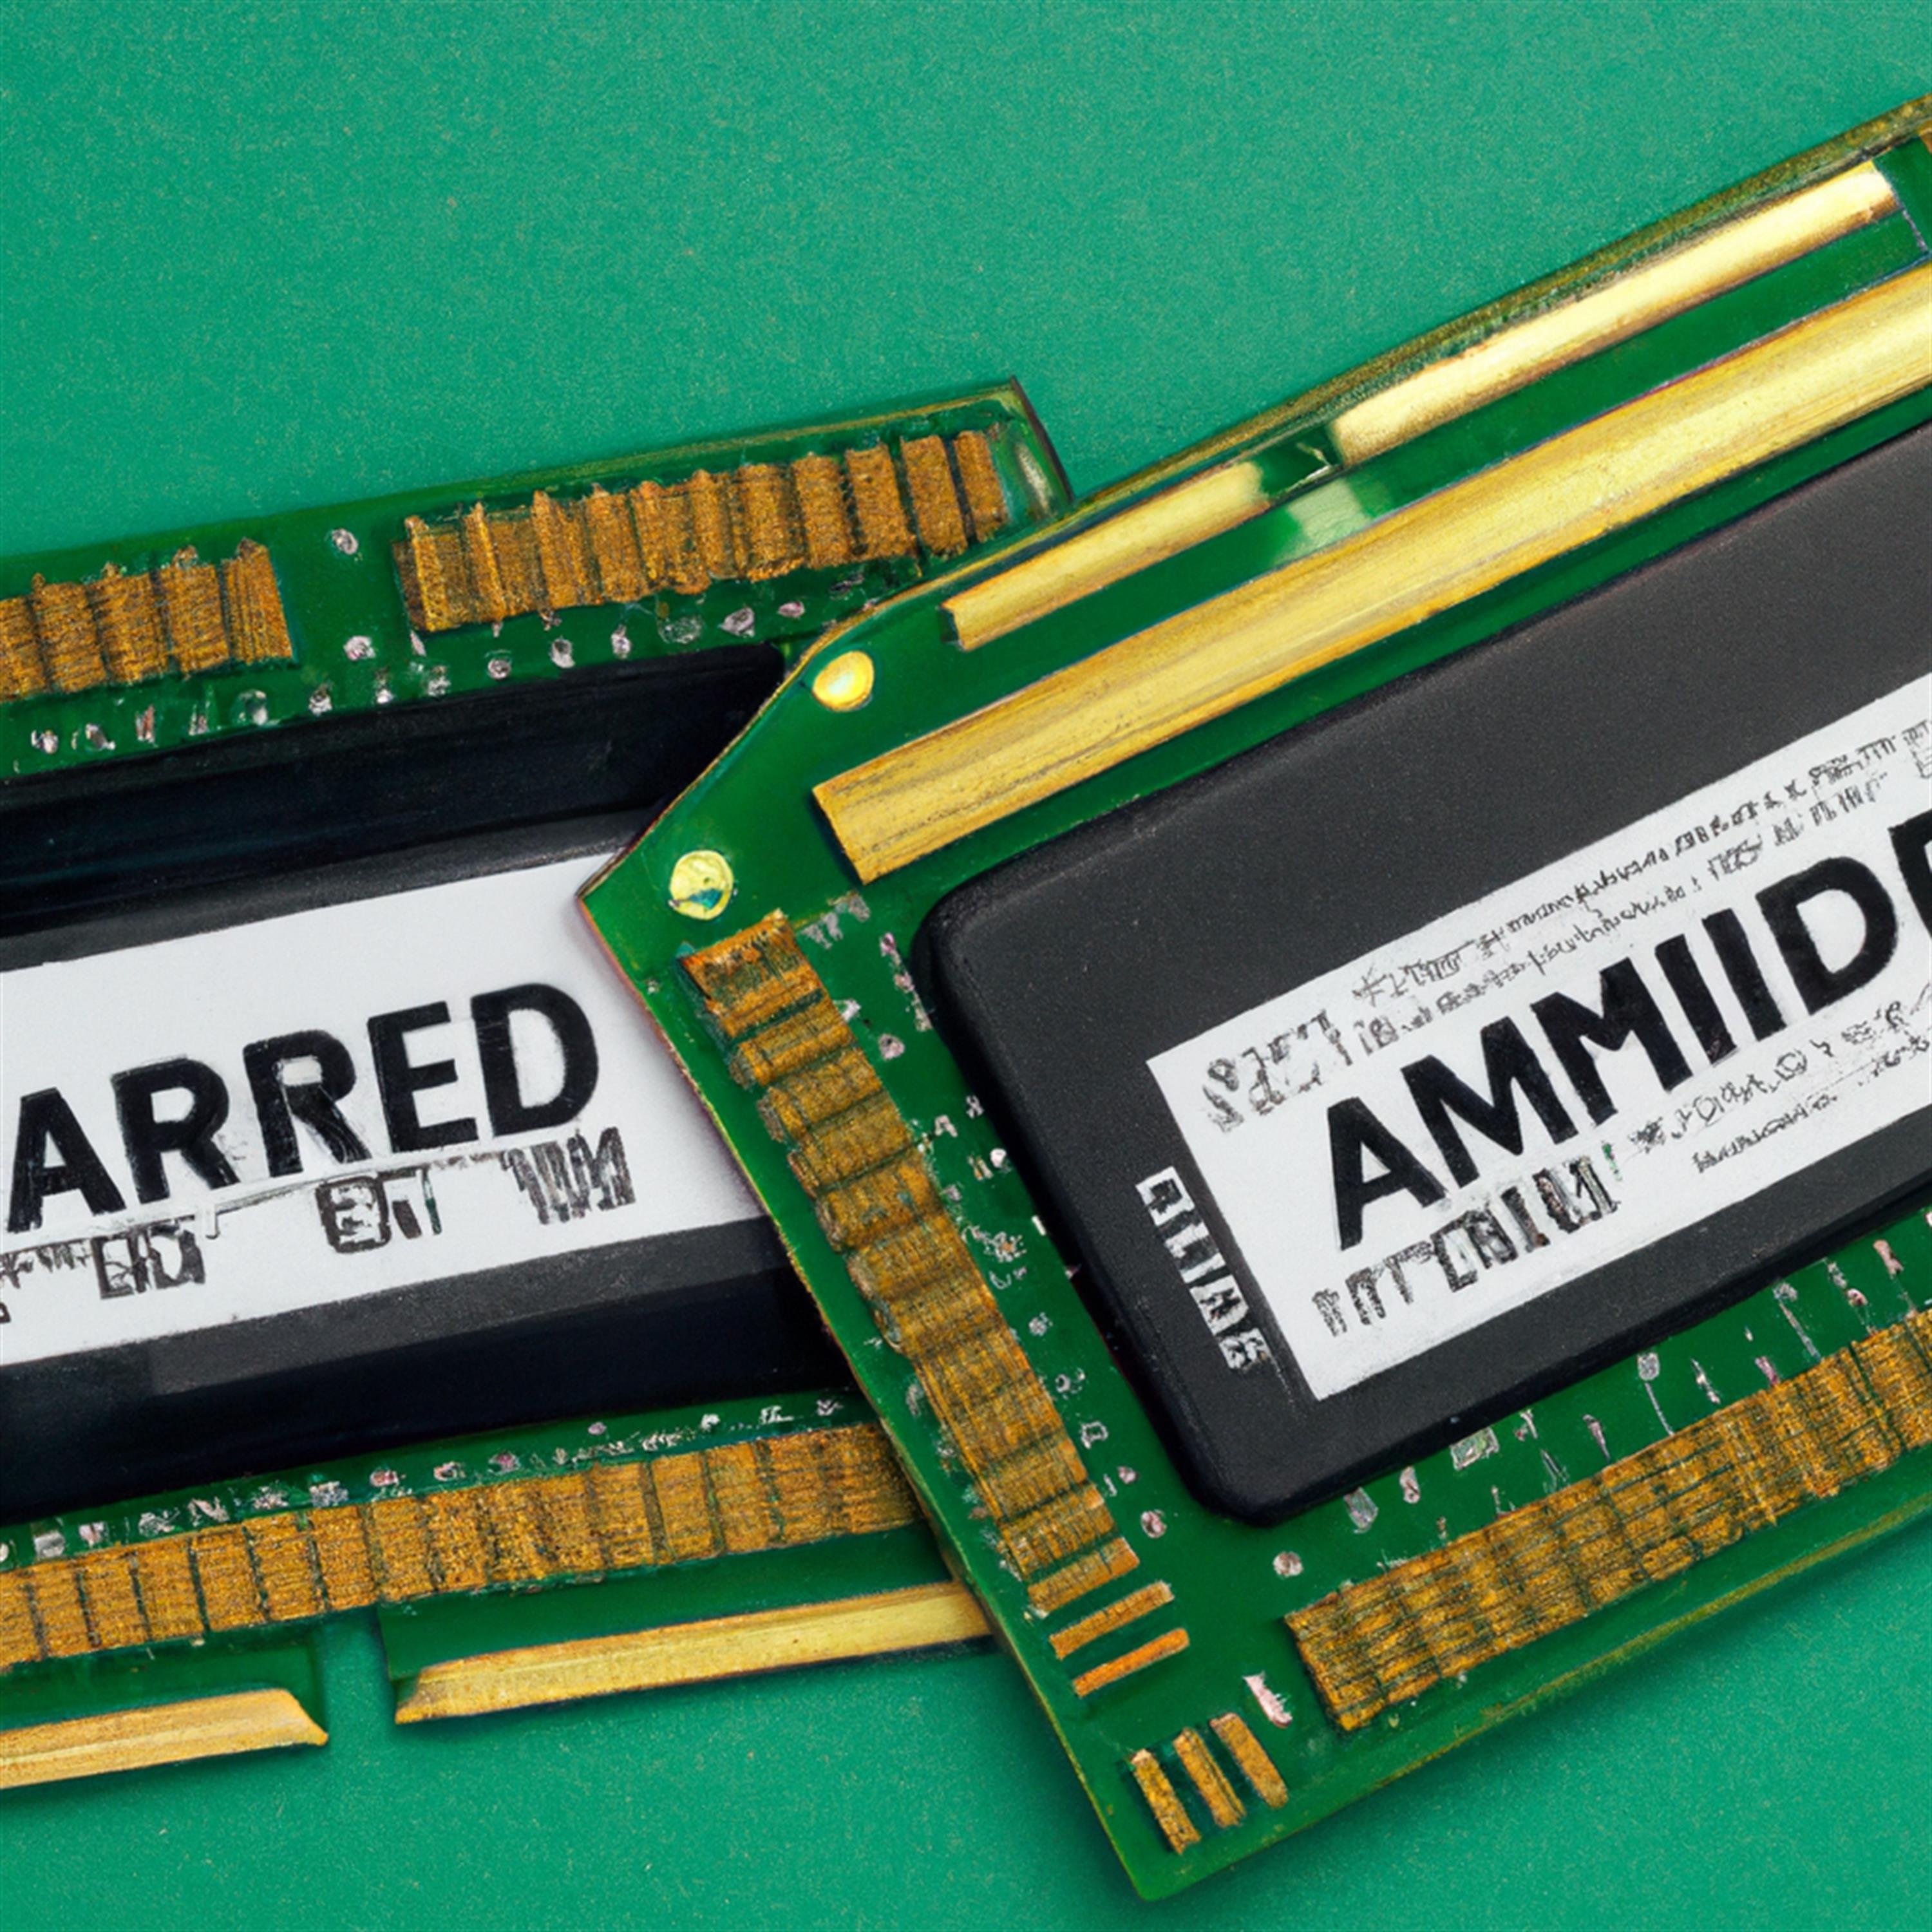 Atemberaubend: Ex-Hacker bringt AMD-Chips dank KI zum Fliegen